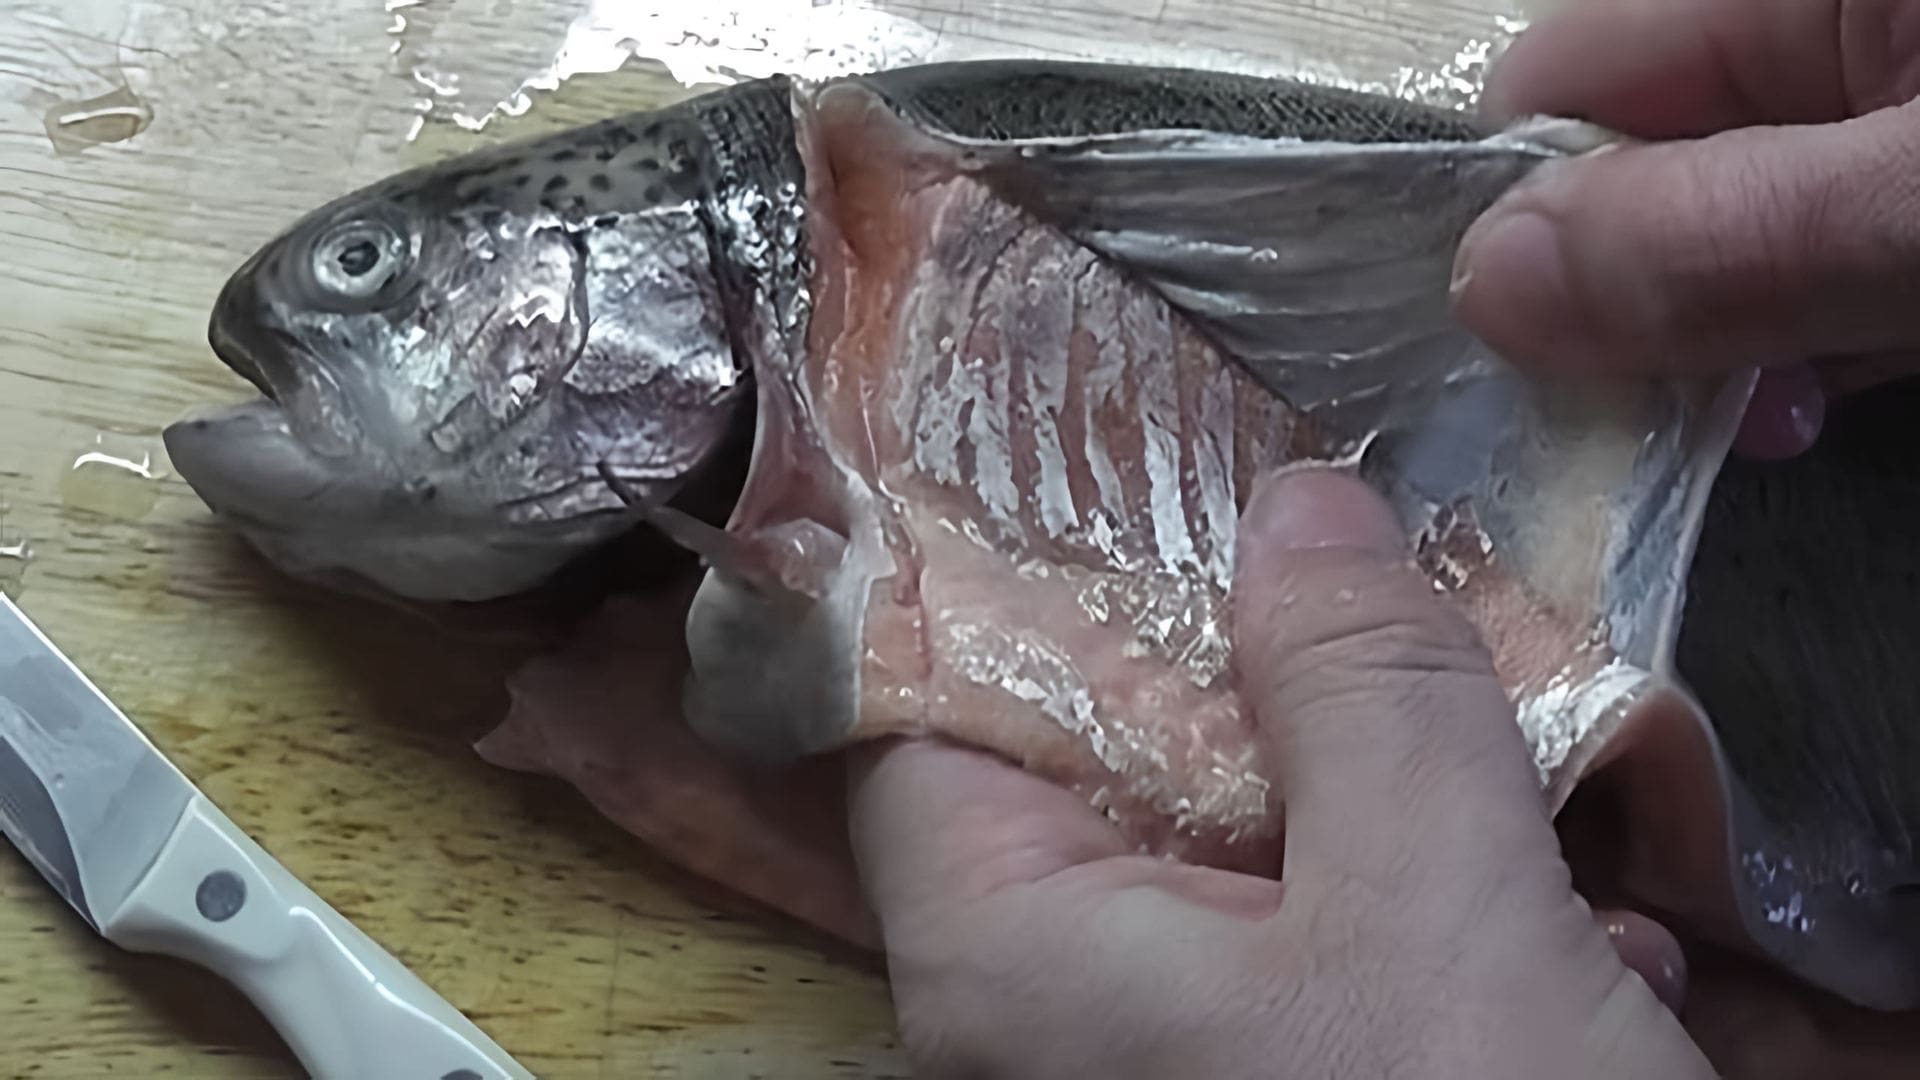 В этом видео-ролике будет показан процесс засолки красной рыбы - форели радужной